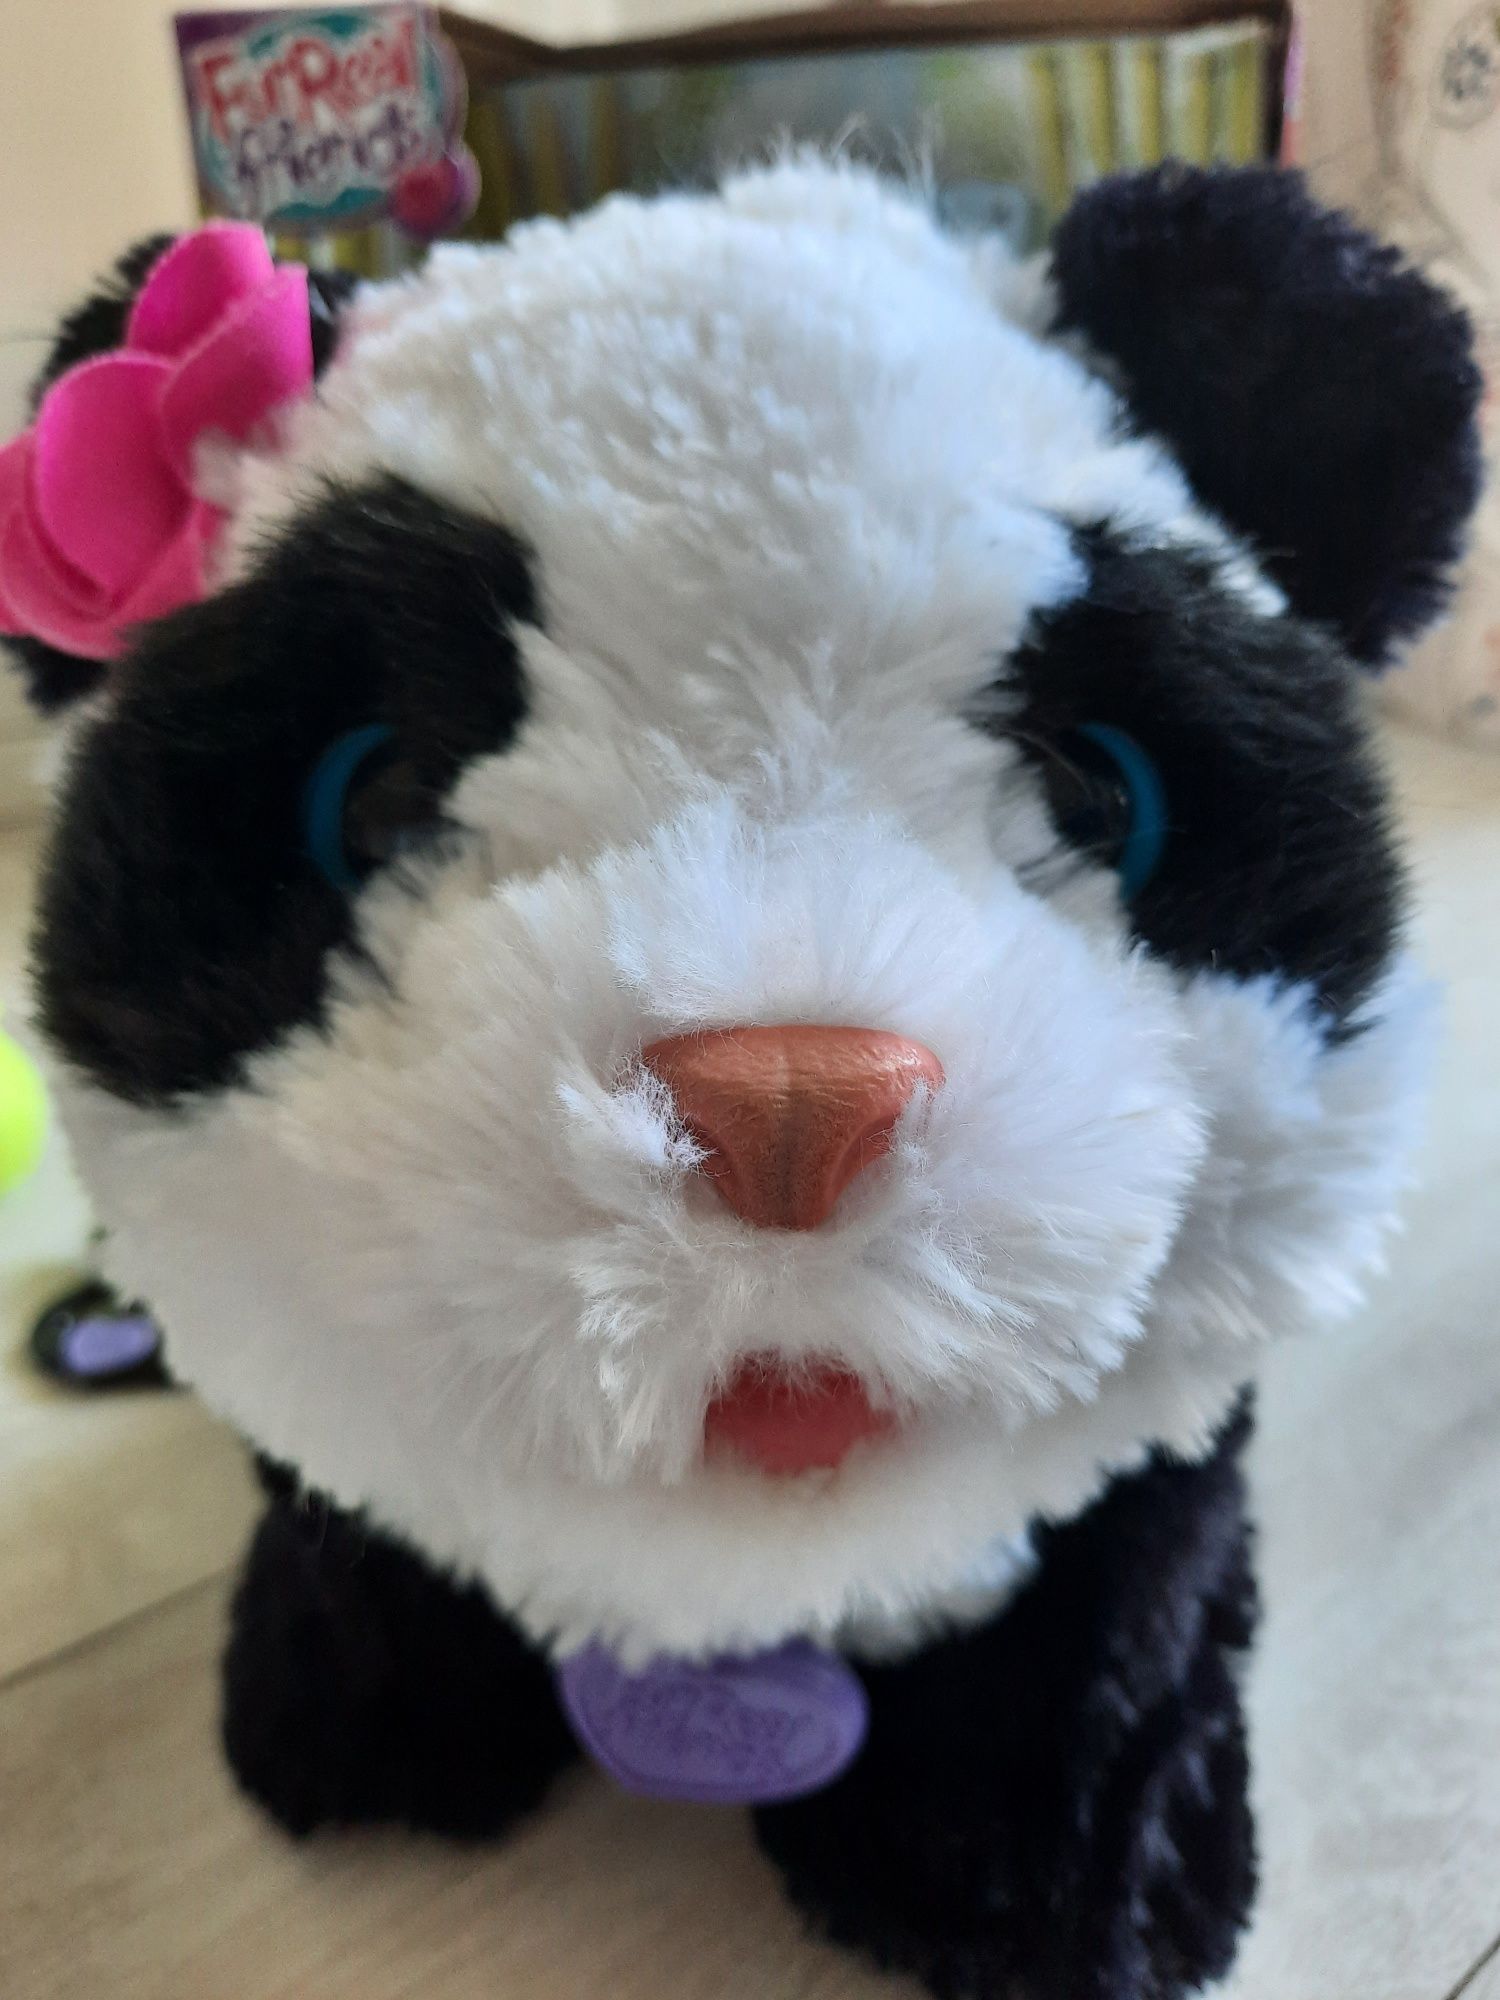 Panda Pom Pom Interaktywna